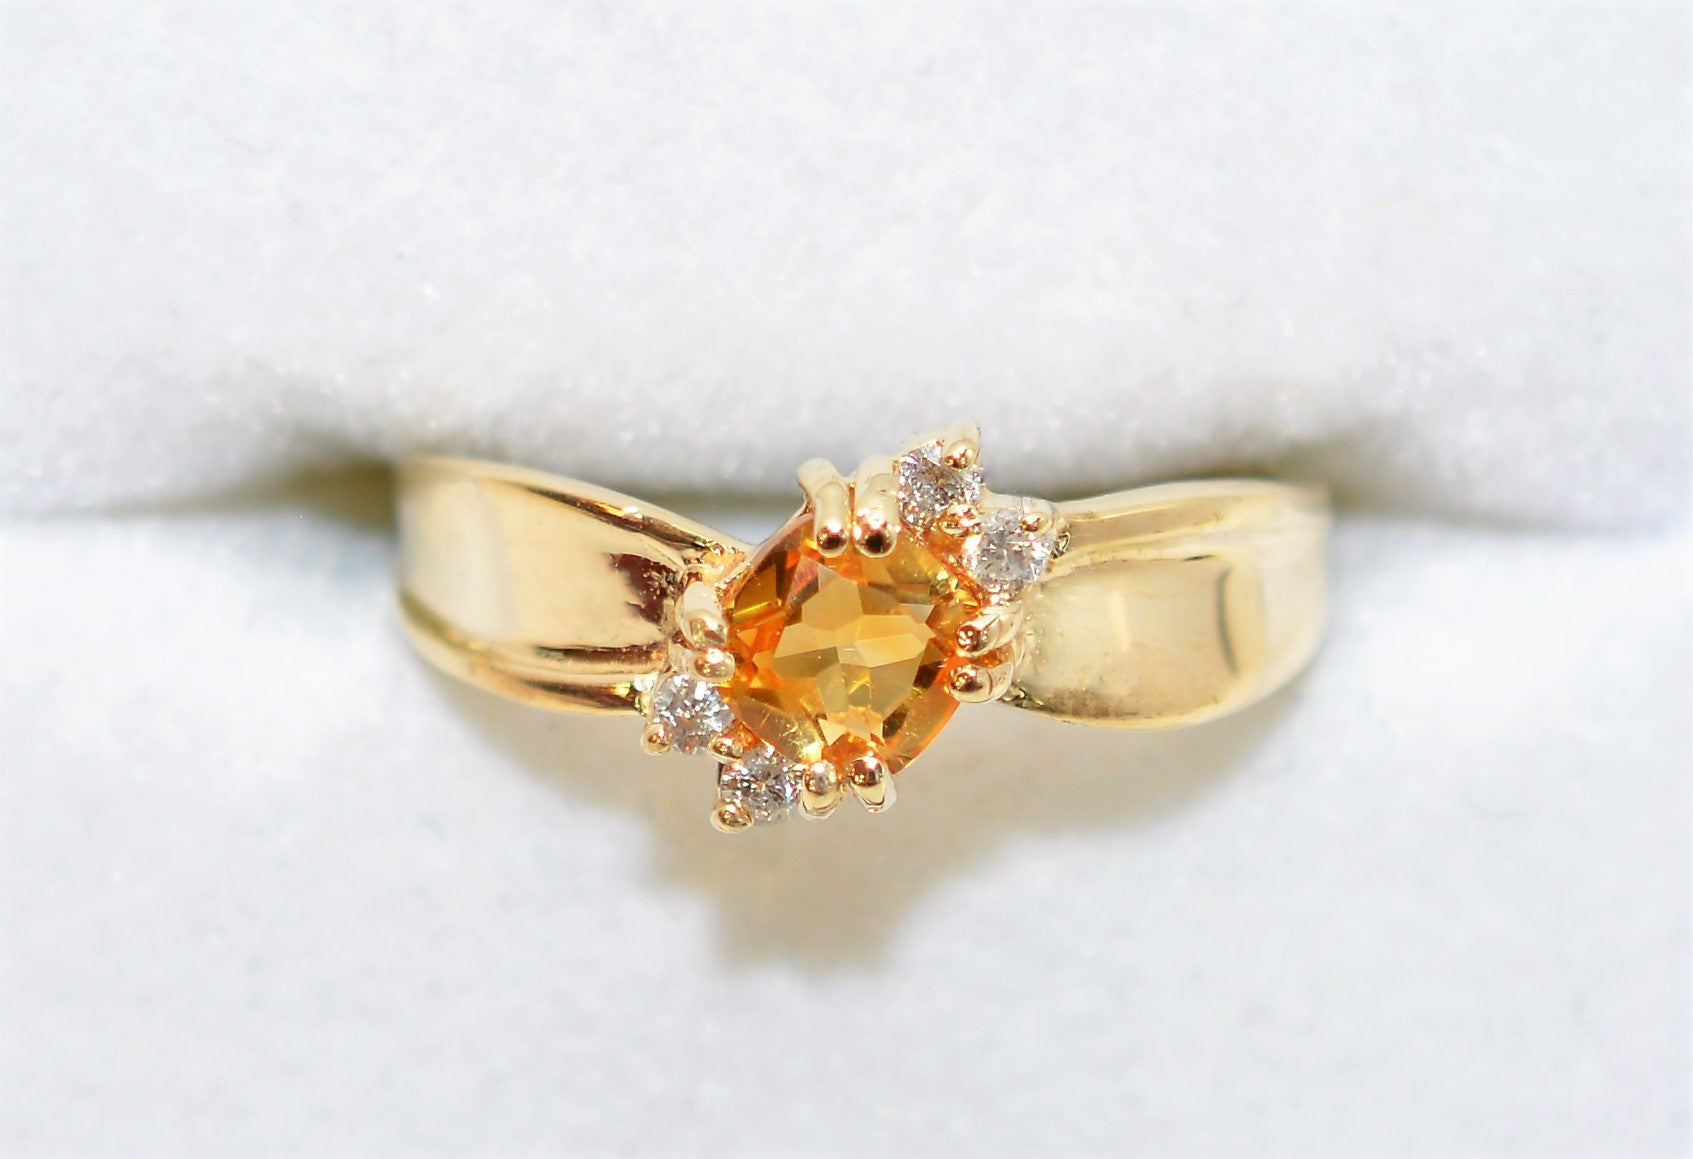 Natural Orange Sapphire & Diamond Ring 10K Solid Gold 1.06tcw September Birthstone Ring Gemstone Ring Orange Ring Women's Ring Ladies Ring